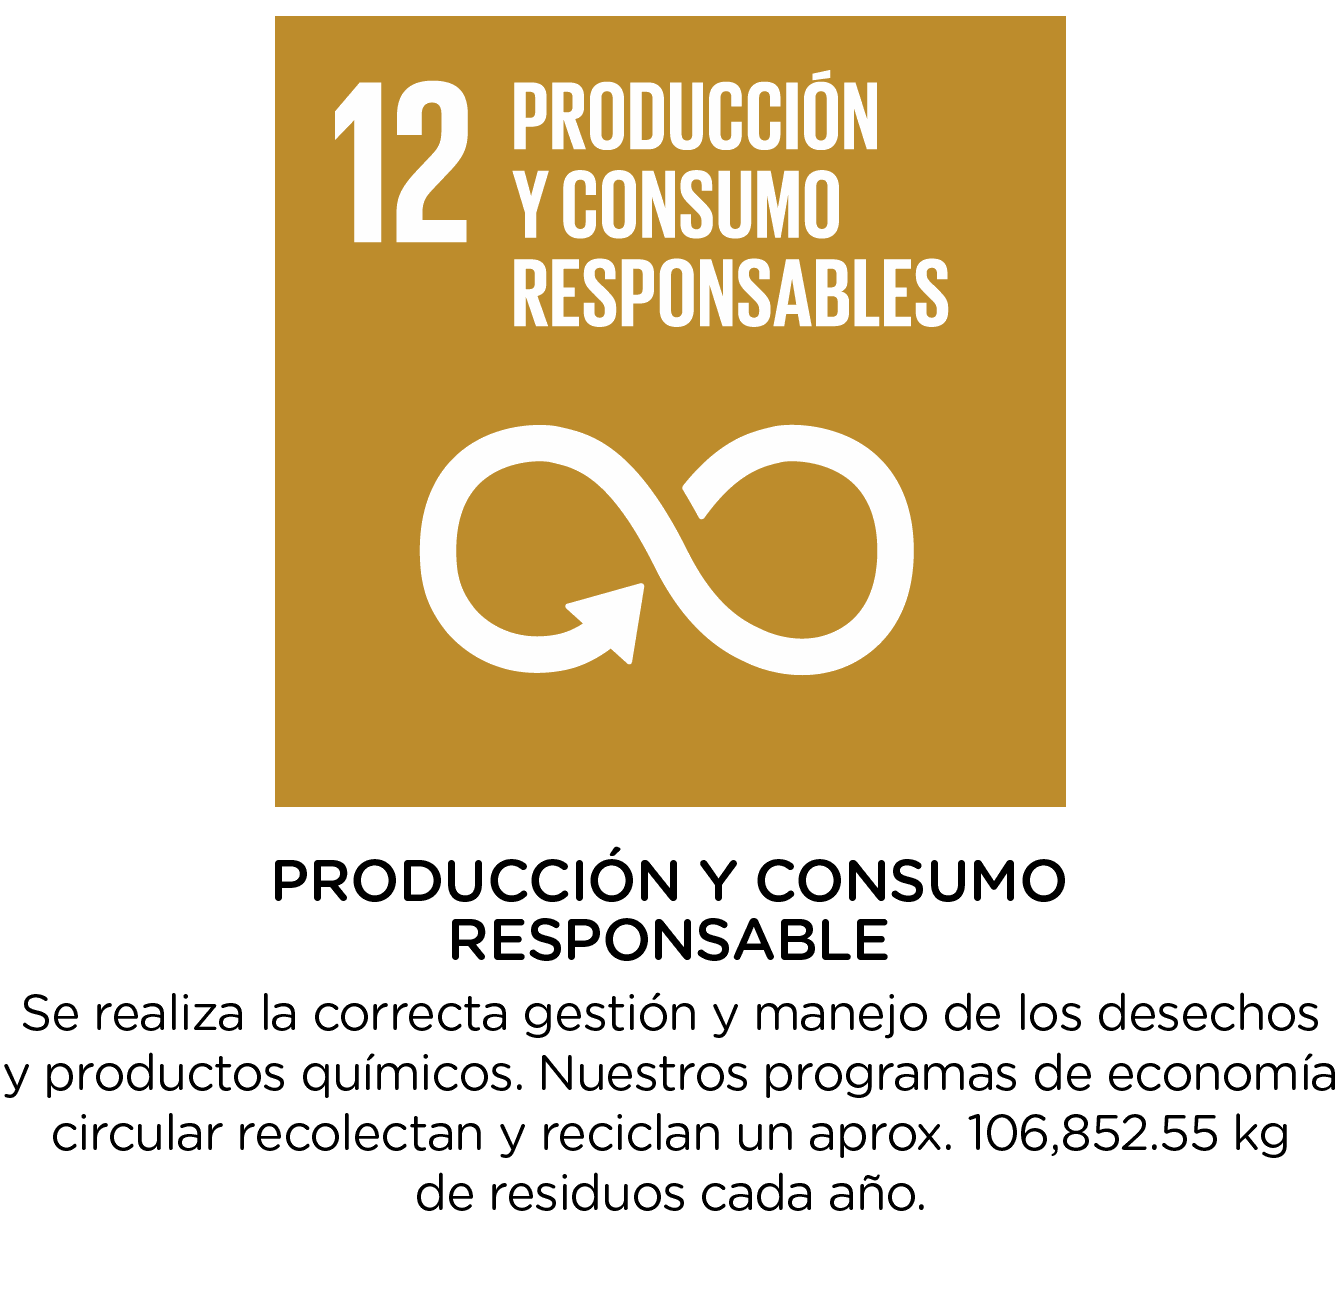 Produccion y consumo responsables